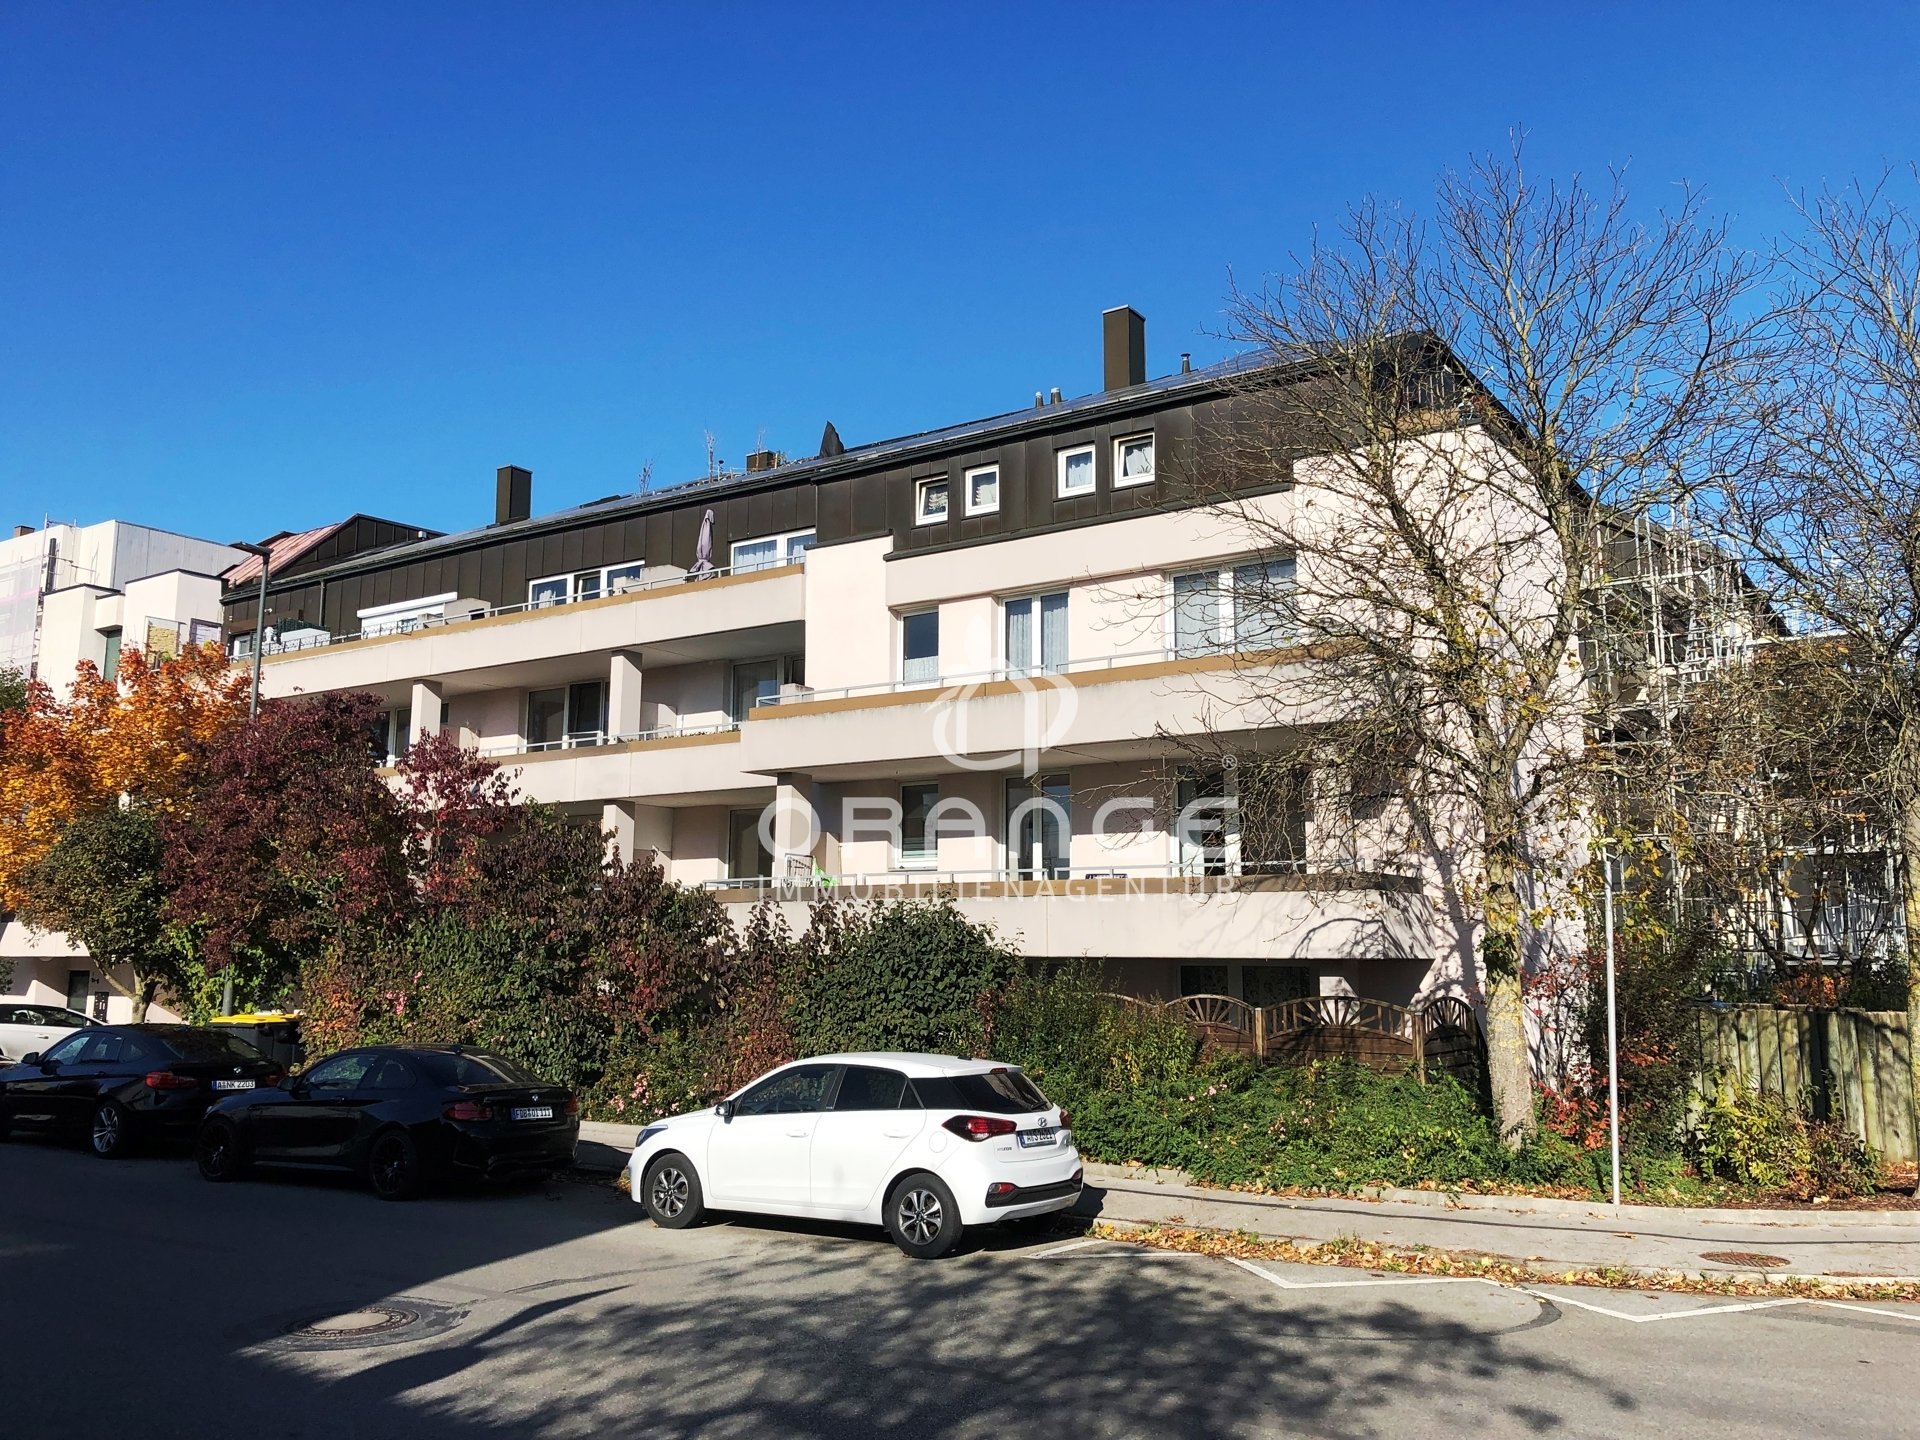 Immobilienangebot - Gersthofen - Alle - Kapitalanleger aufgepasst - top gepflegte 2-ZKB Wohnung